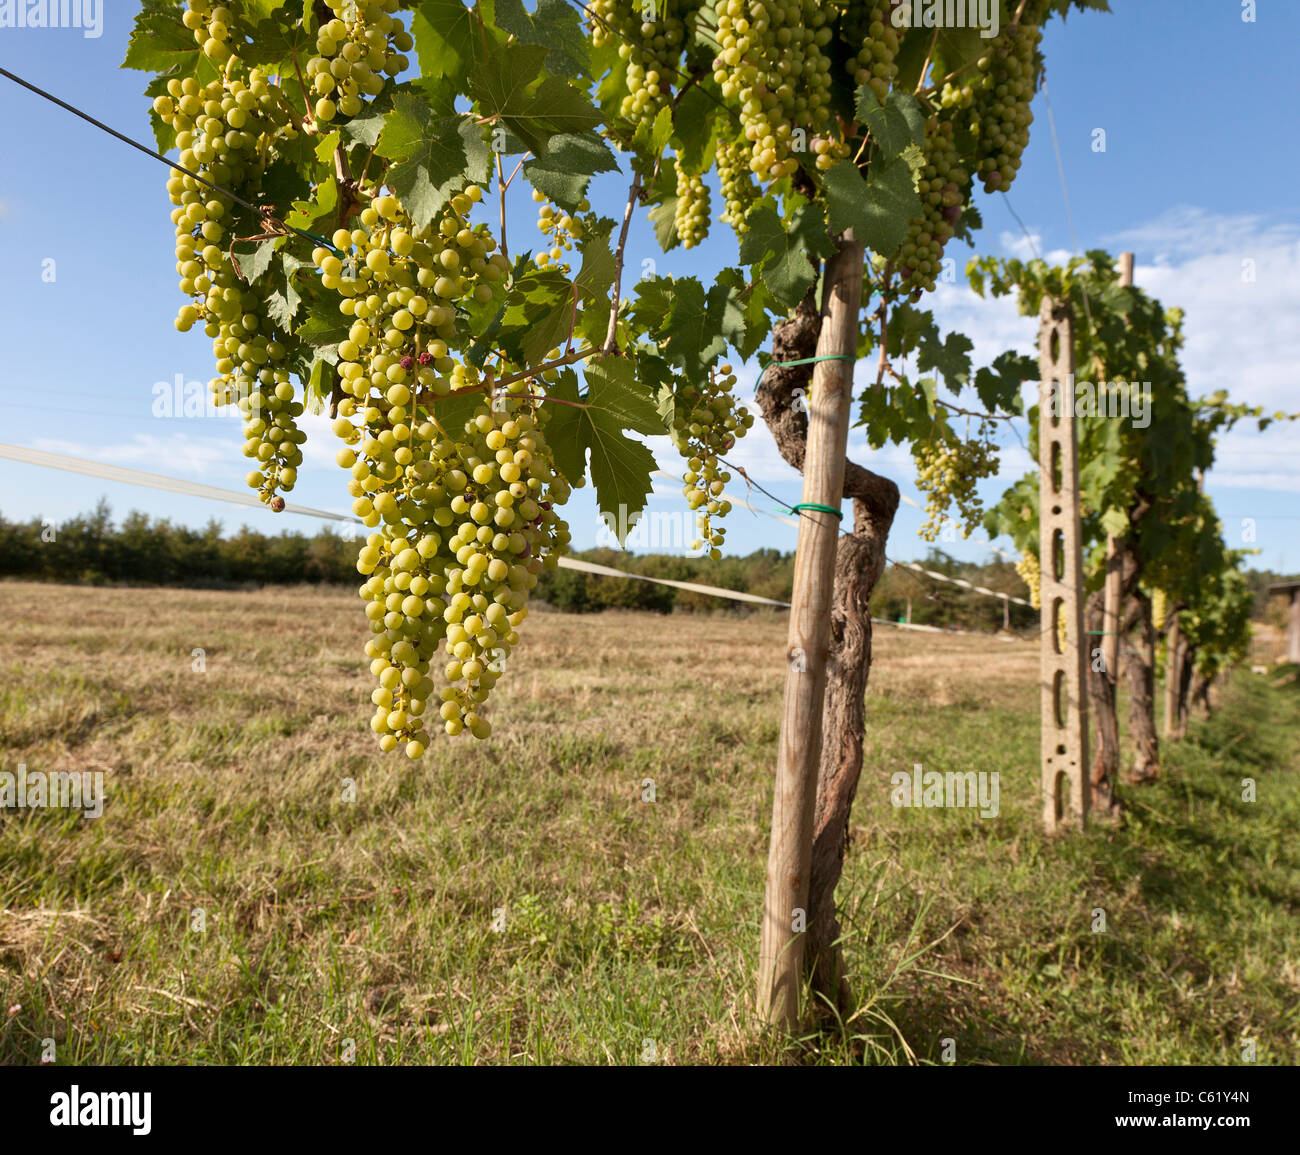 Les vignes de raisins blancs, Chianti, au sud de Florence, Italie Banque D'Images